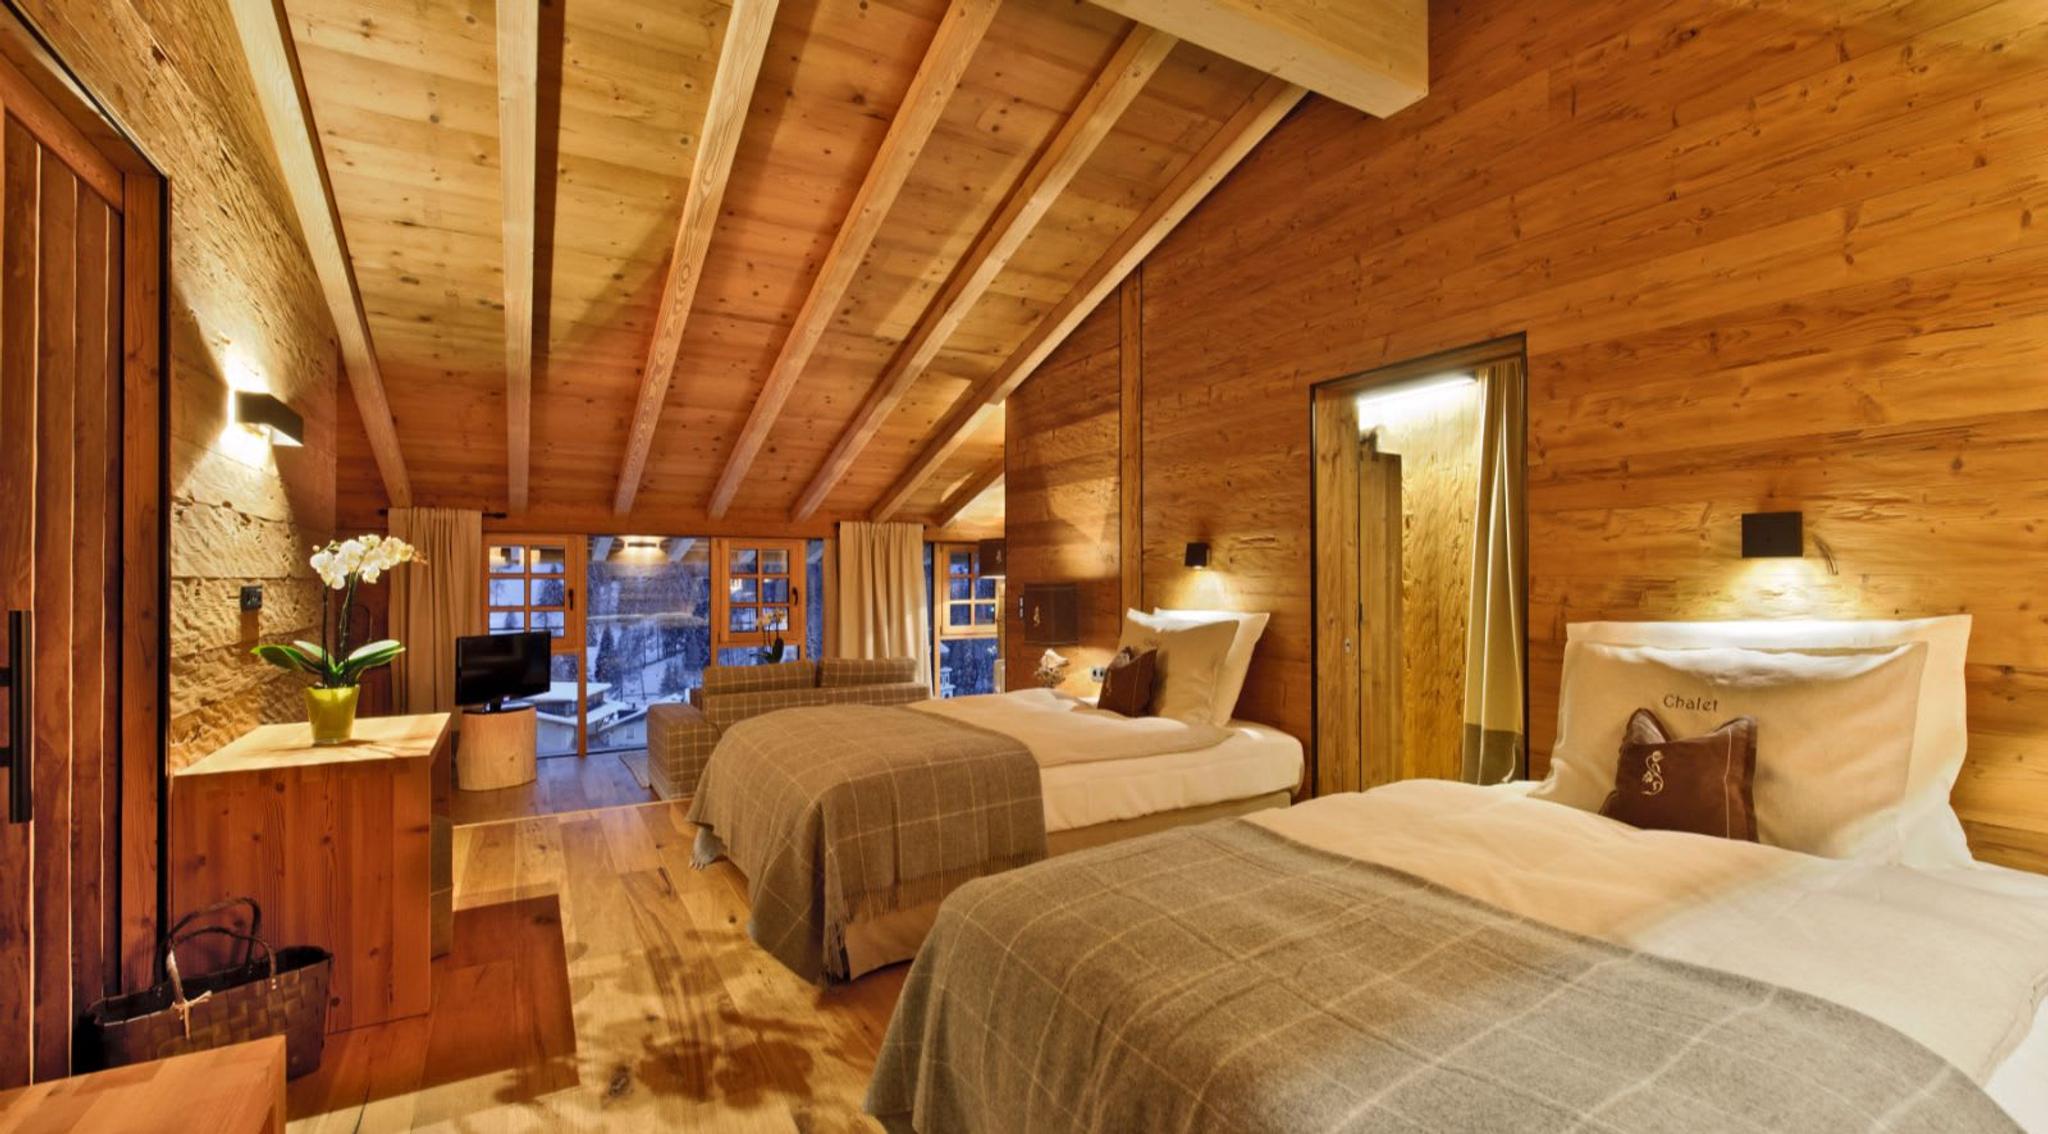 Zone de couchage du Chalet Gran Cil, l'un des cinq superbes chalets de l'hôtel Fanes, avec des intérieurs en bois, des couvertures en tartan de cachemire et une vue panoramique à couper le souffle sur le village et les pistes.